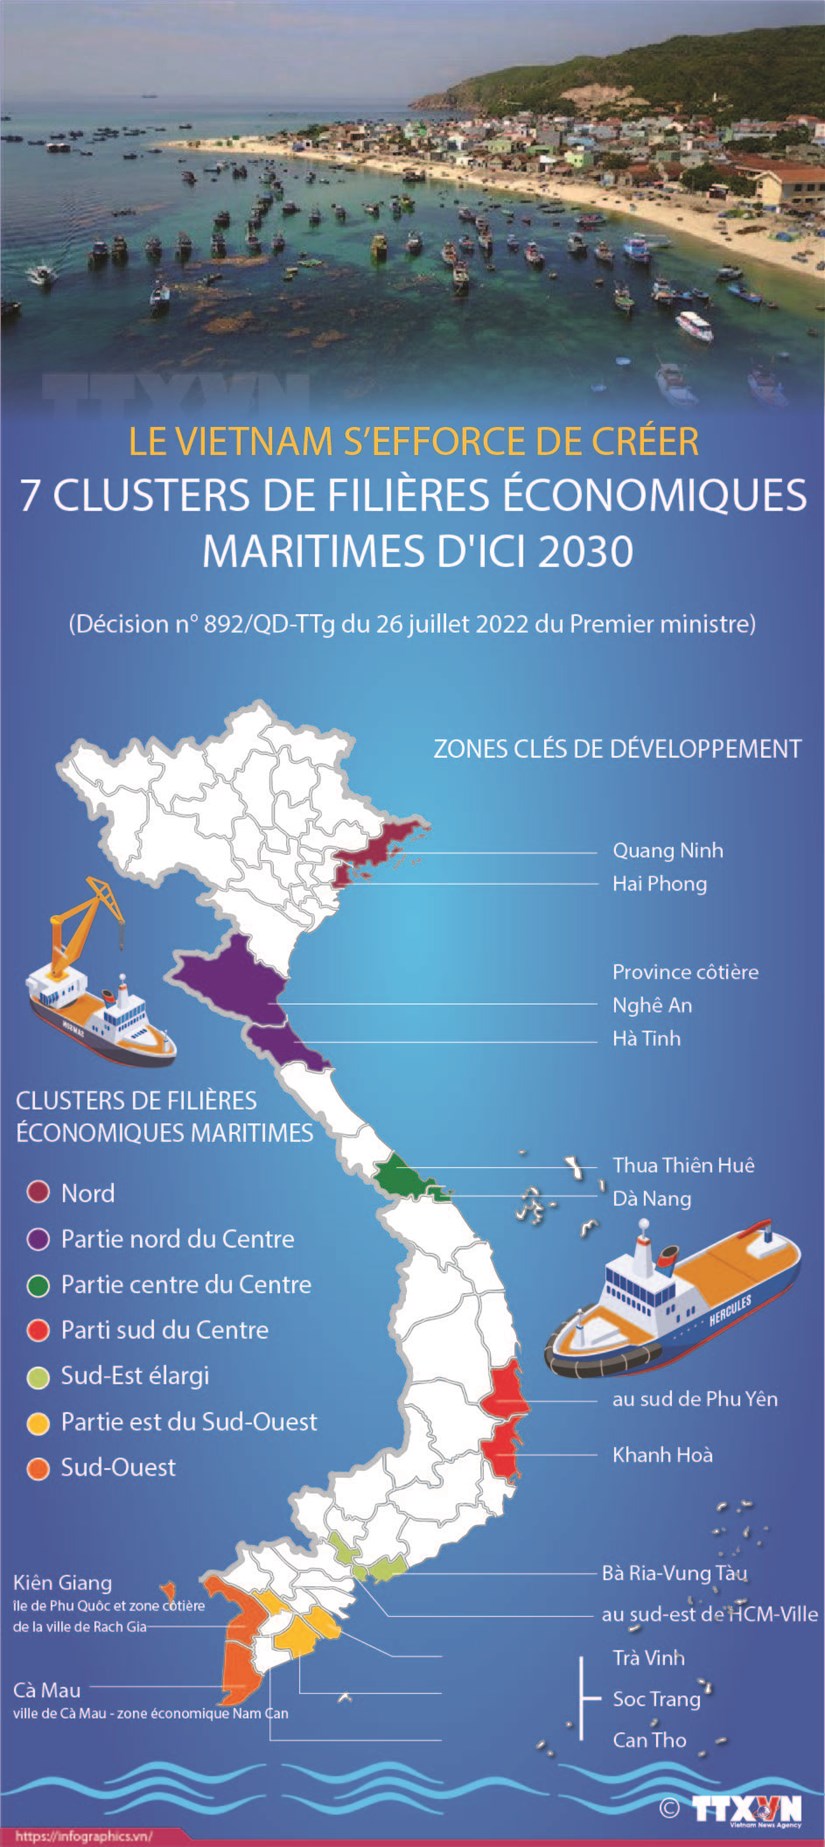 Le Vietnam s'efforce de creer 7 clusters de flieres economiques maritimes d'ici 2030 hinh anh 1